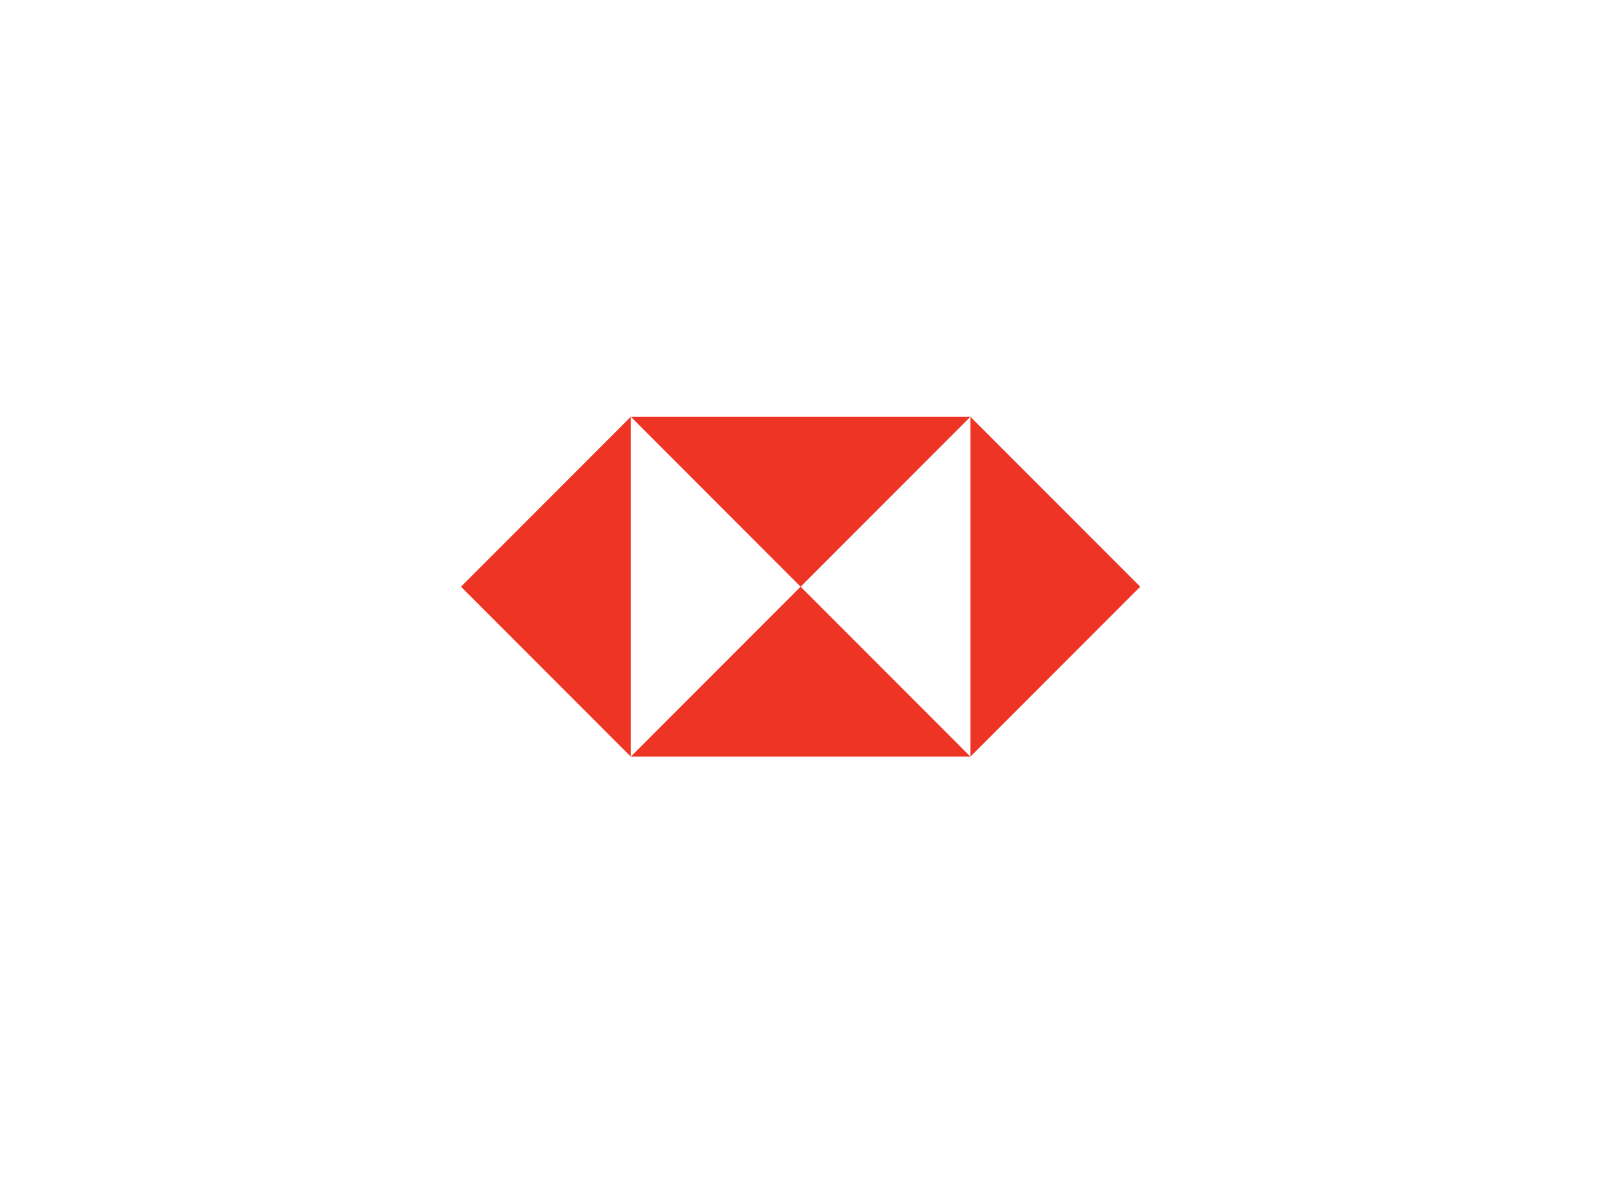 Red and White Bank Logo - HSBC logo | Logok